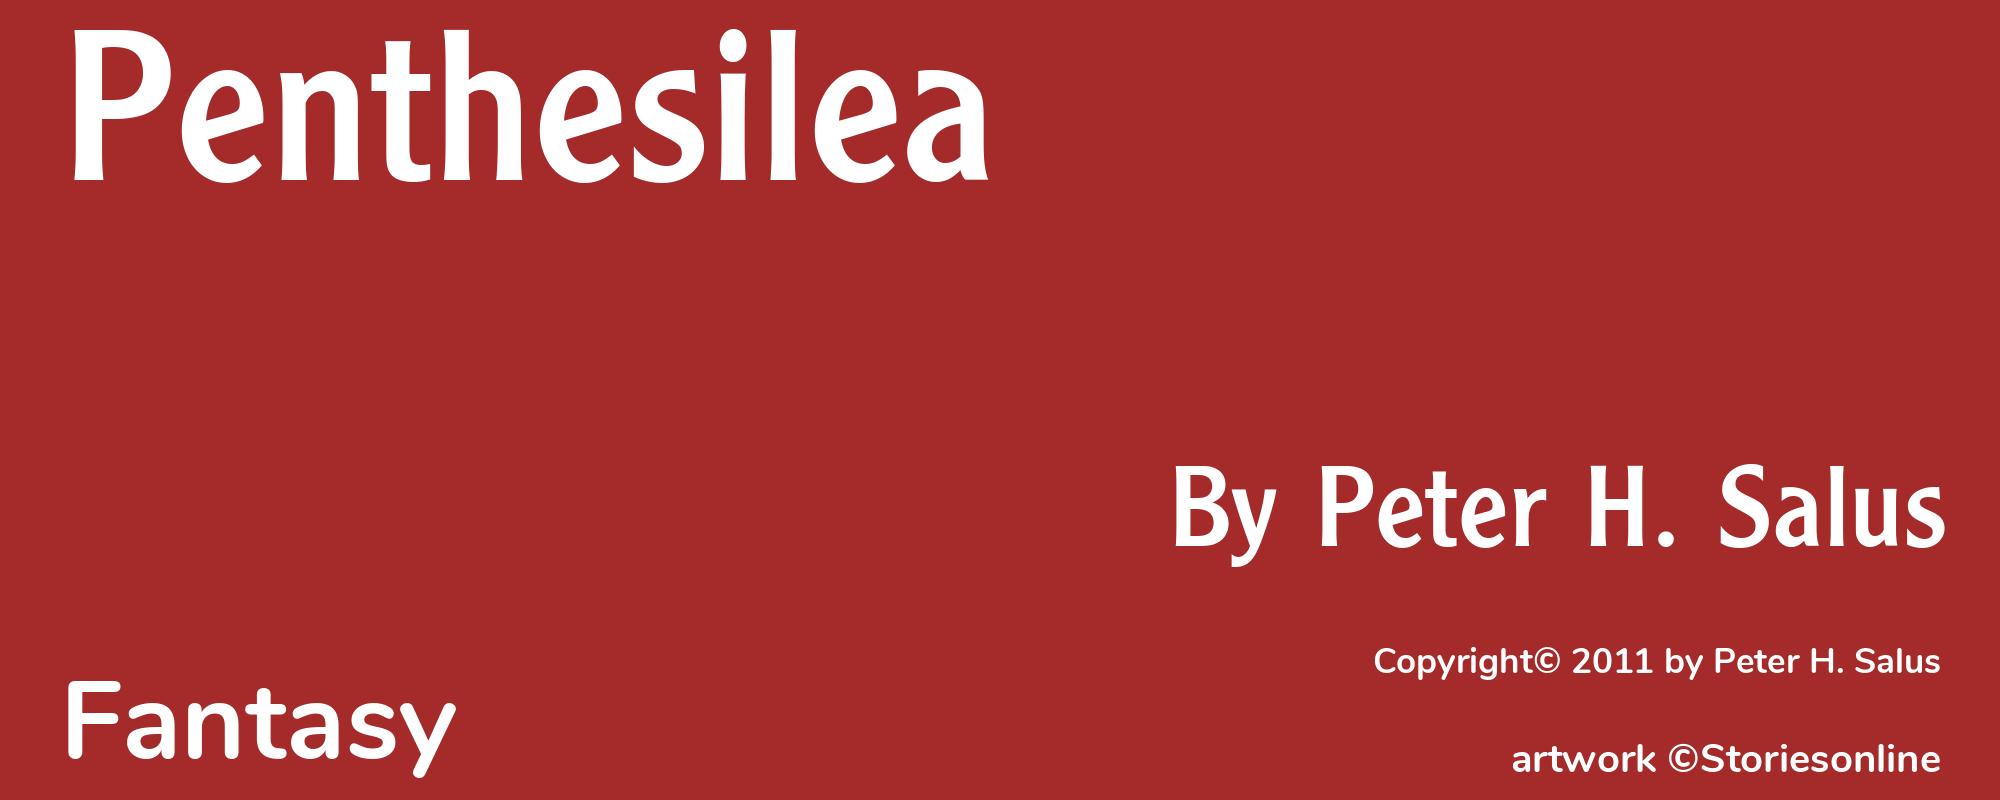 Penthesilea - Cover